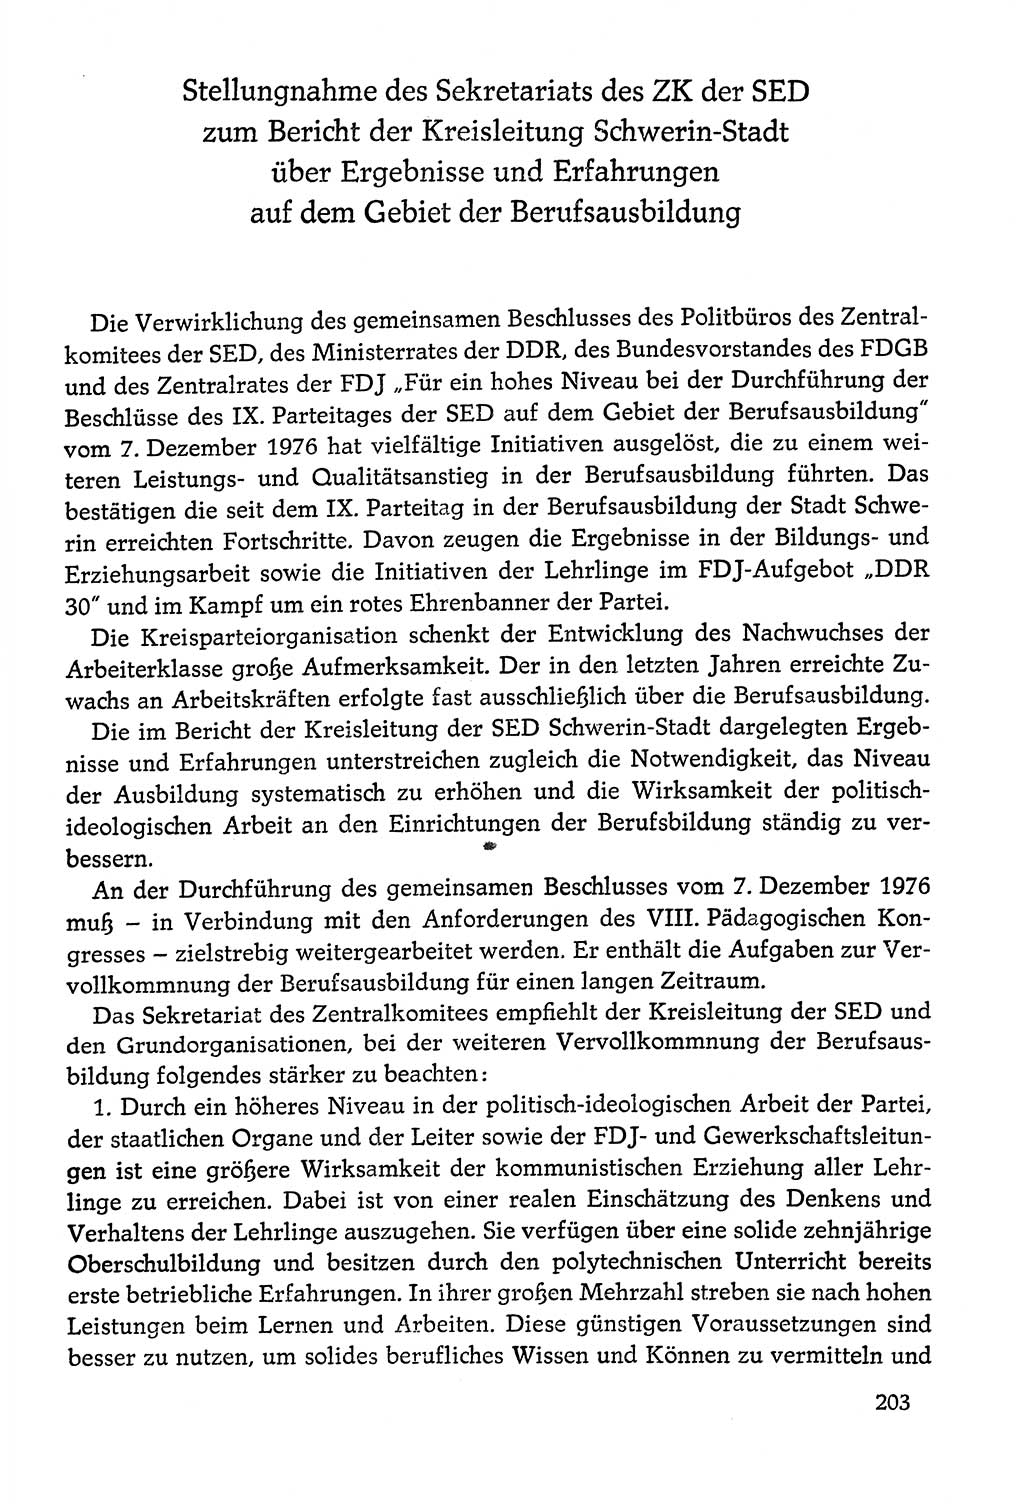 Dokumente der Sozialistischen Einheitspartei Deutschlands (SED) [Deutsche Demokratische Republik (DDR)] 1978-1979, Seite 203 (Dok. SED DDR 1978-1979, S. 203)